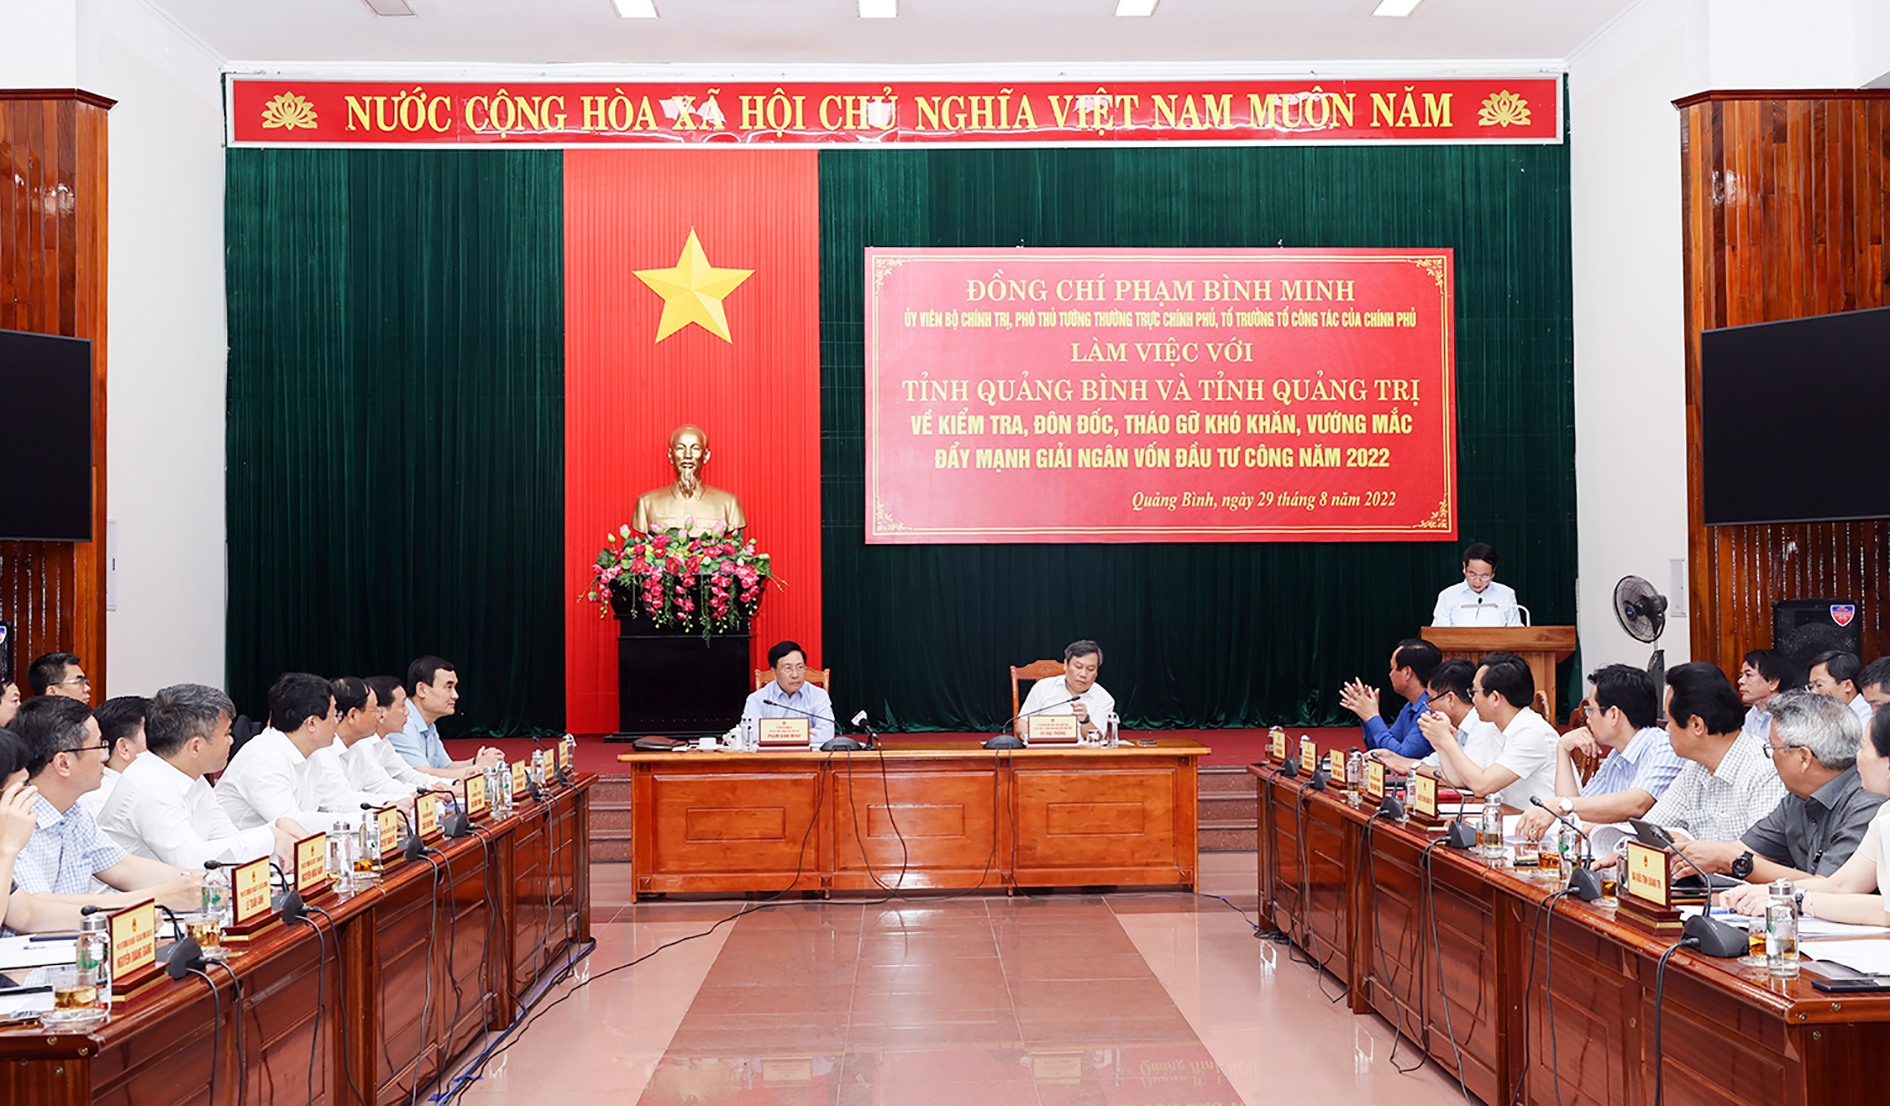 Phó Thủ tướng Thường trực Phạm Bình Minh chủ trì buổi làm việc với Quảng Trị và tỉnh Quảng Bình để đôn đốc, tháo gỡ vướng mắc đẩy mạnh giải ngân vốn đầu tư công năm 2022 - Ảnh C.P​